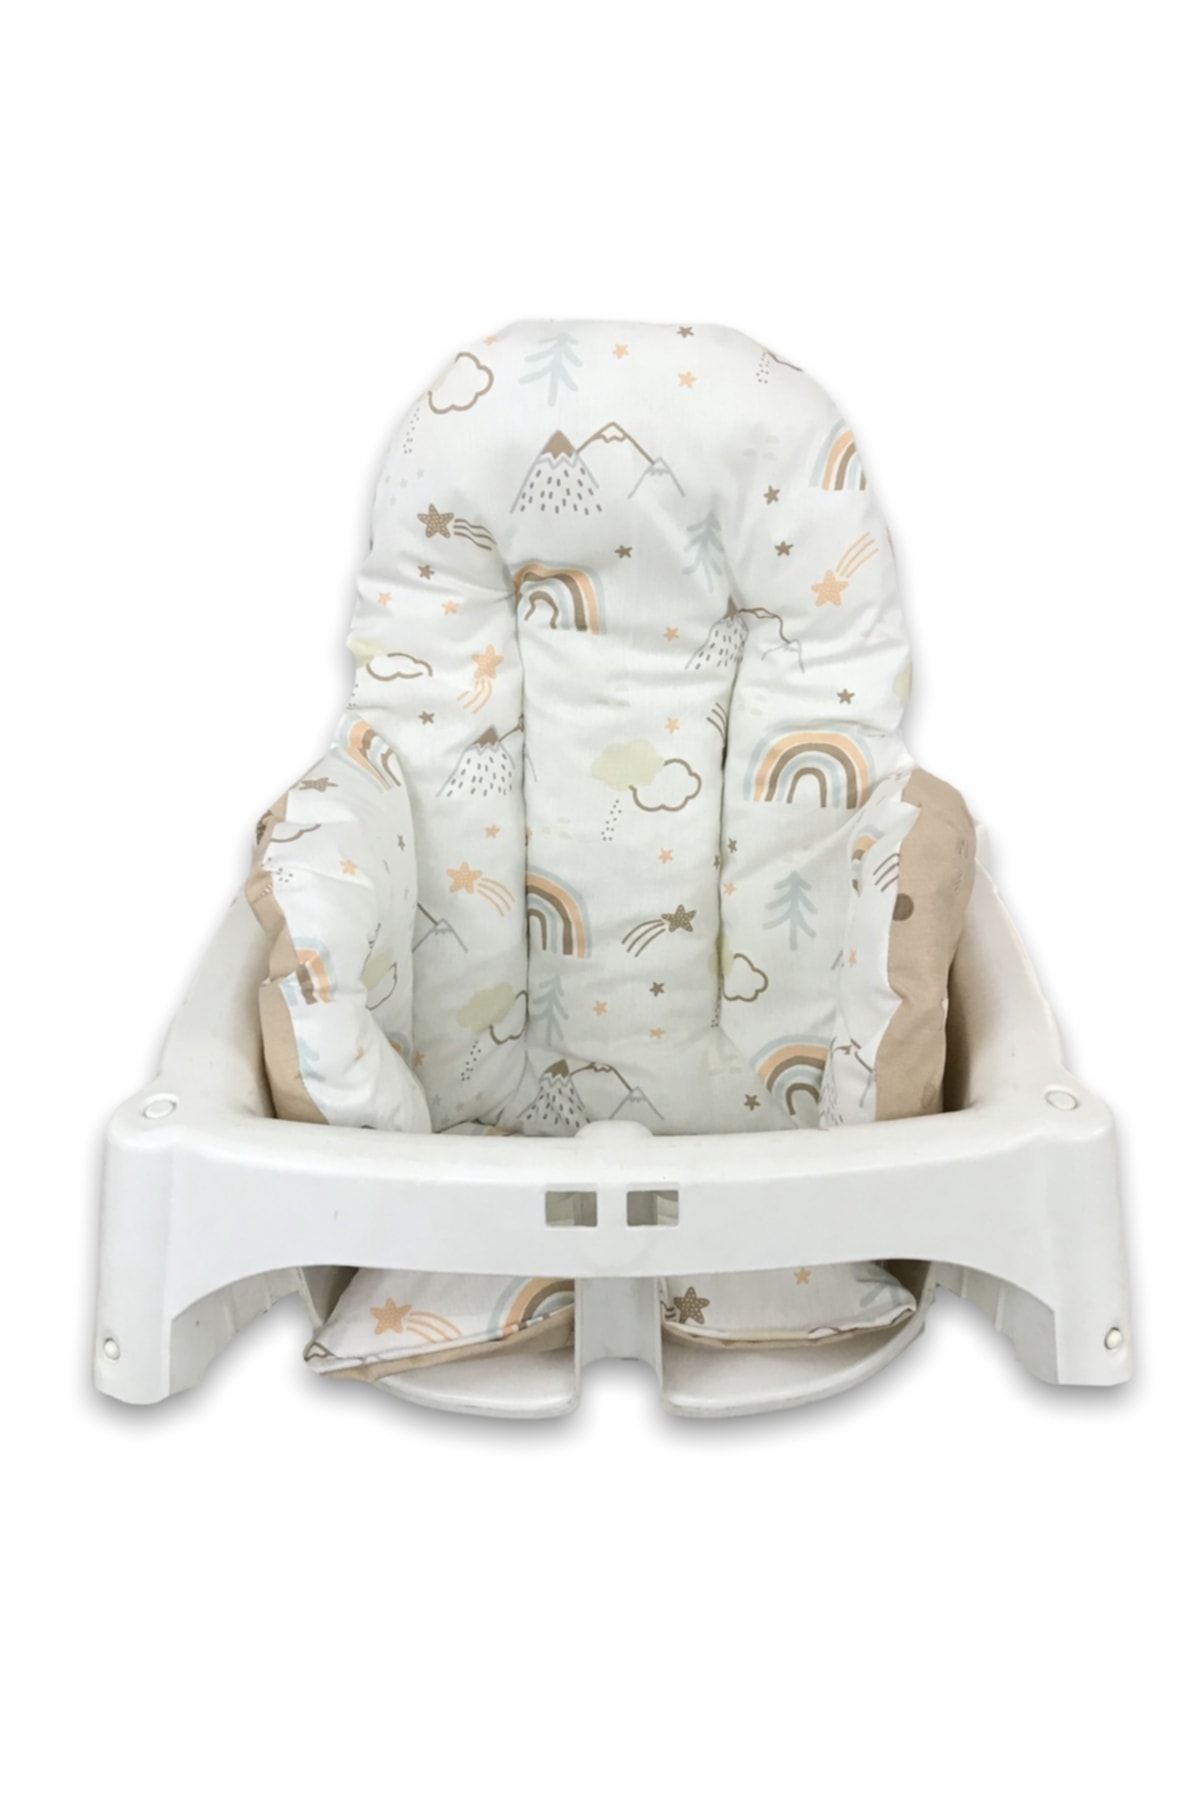 Bebek Özel Pamuklu Bebek Çocuk Mama Sandalyesi Minderi Gökkuşağı Yıldızlı Kahverengi